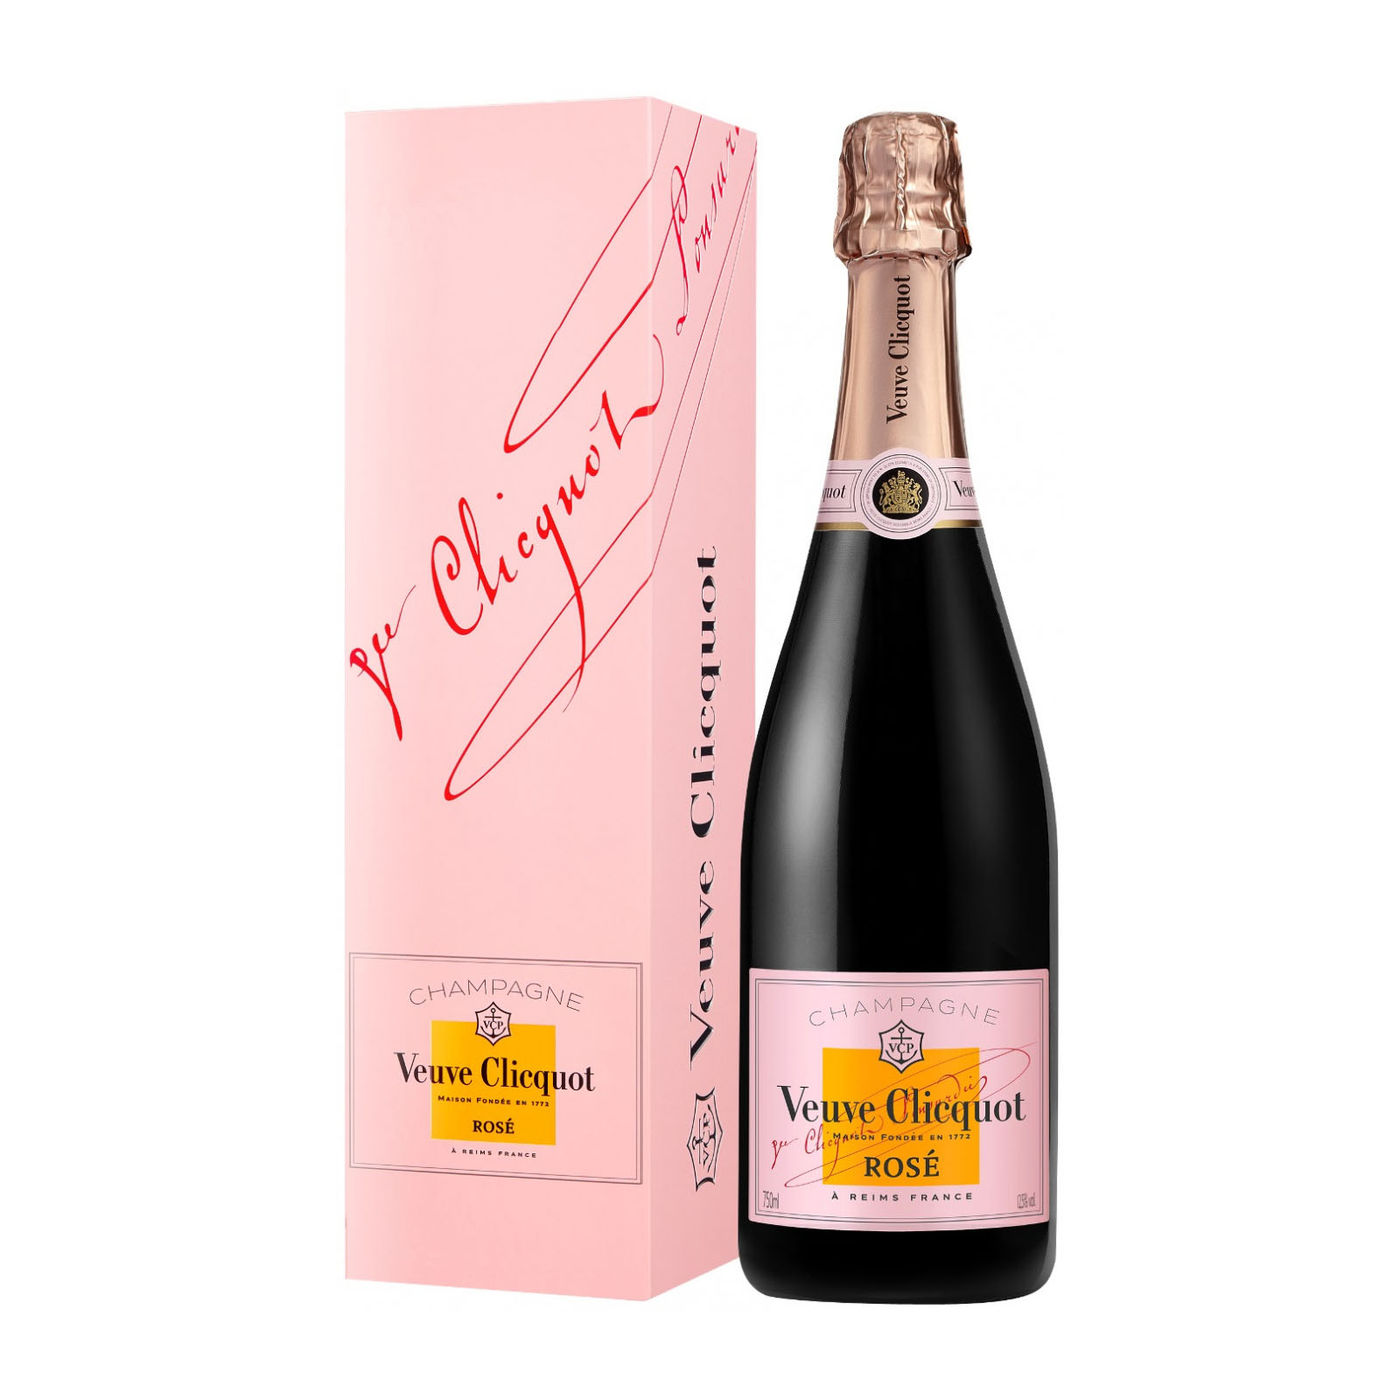 Бутылка вдовы клико. Шампанское Veuve Clicquot Rose 0.75 л. Шампанское Veuve Clicquot Brut Rose, 0.75л. Вдова Клико Понсардин Розе. Шампанское "Veuve Clicquot Ponsardin" (вдова Клико Понсардин).